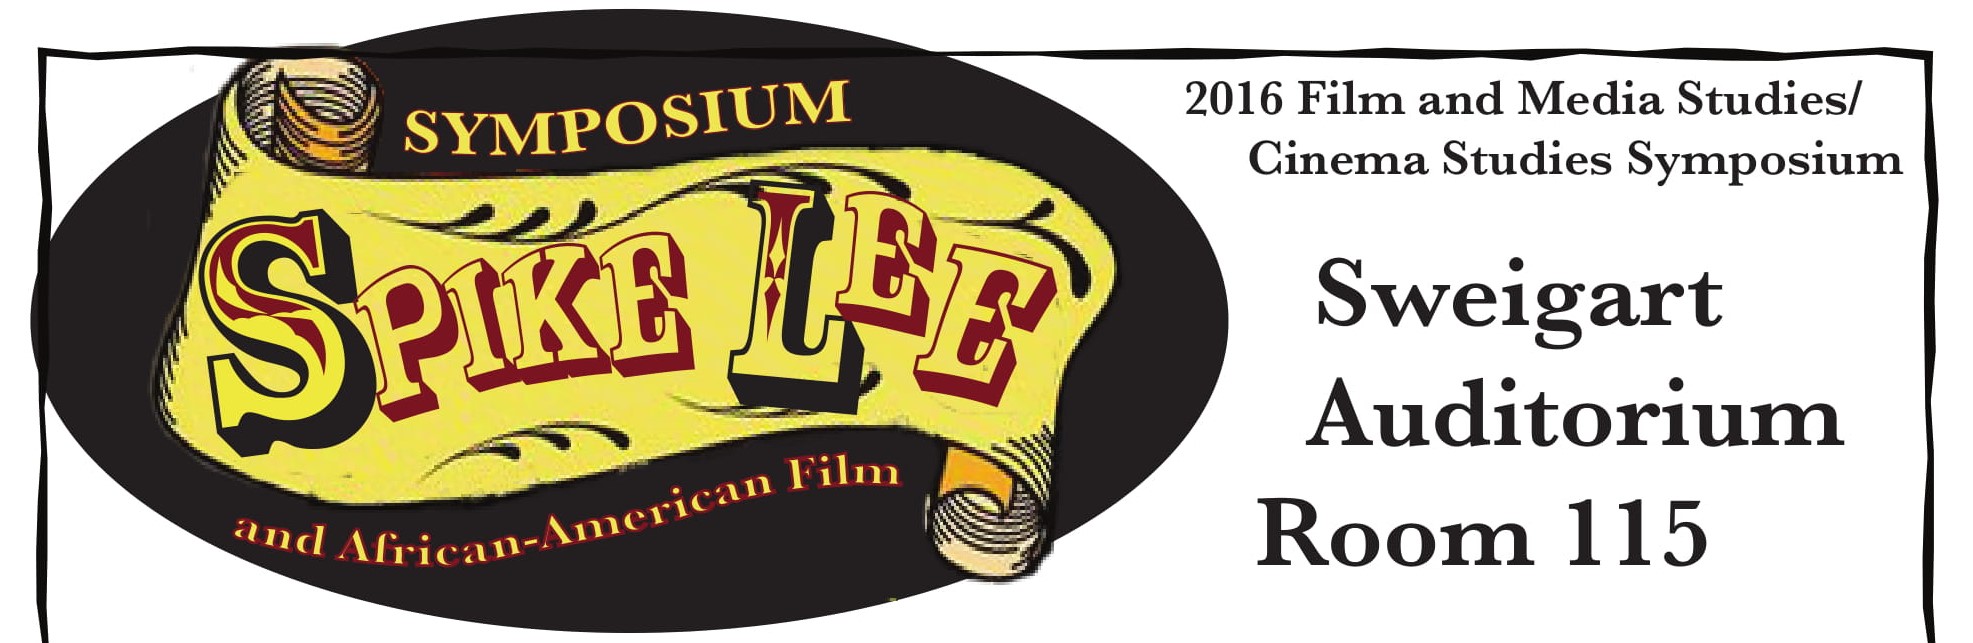 2016 Film Symposium